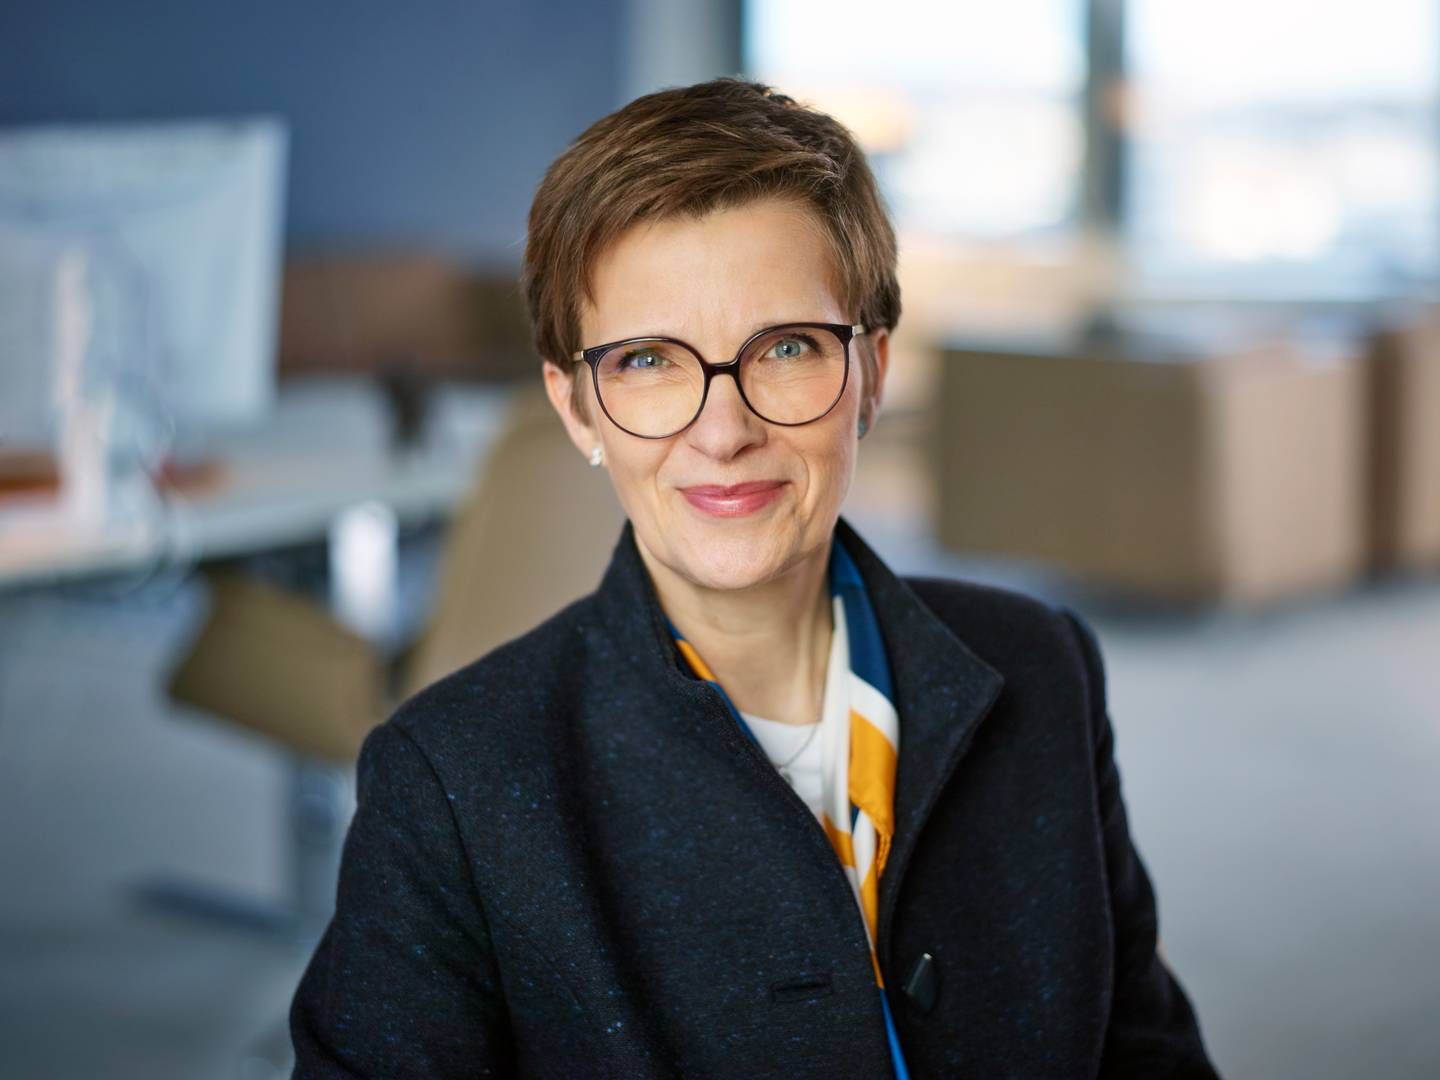 Claudia Maria Buch (geboren 1966 in Paderborn) ist seit Jahresbeginn Vorsitzende der EZB-Bankenaufsicht. Zuvor war sie seit 2014 Vizepräsidentin der Deutschen Bundesbank. Die Professorin lehrt bis heute an der Otto-von-Guericke-Universität in Magdeburg. | Foto: Bundesbank